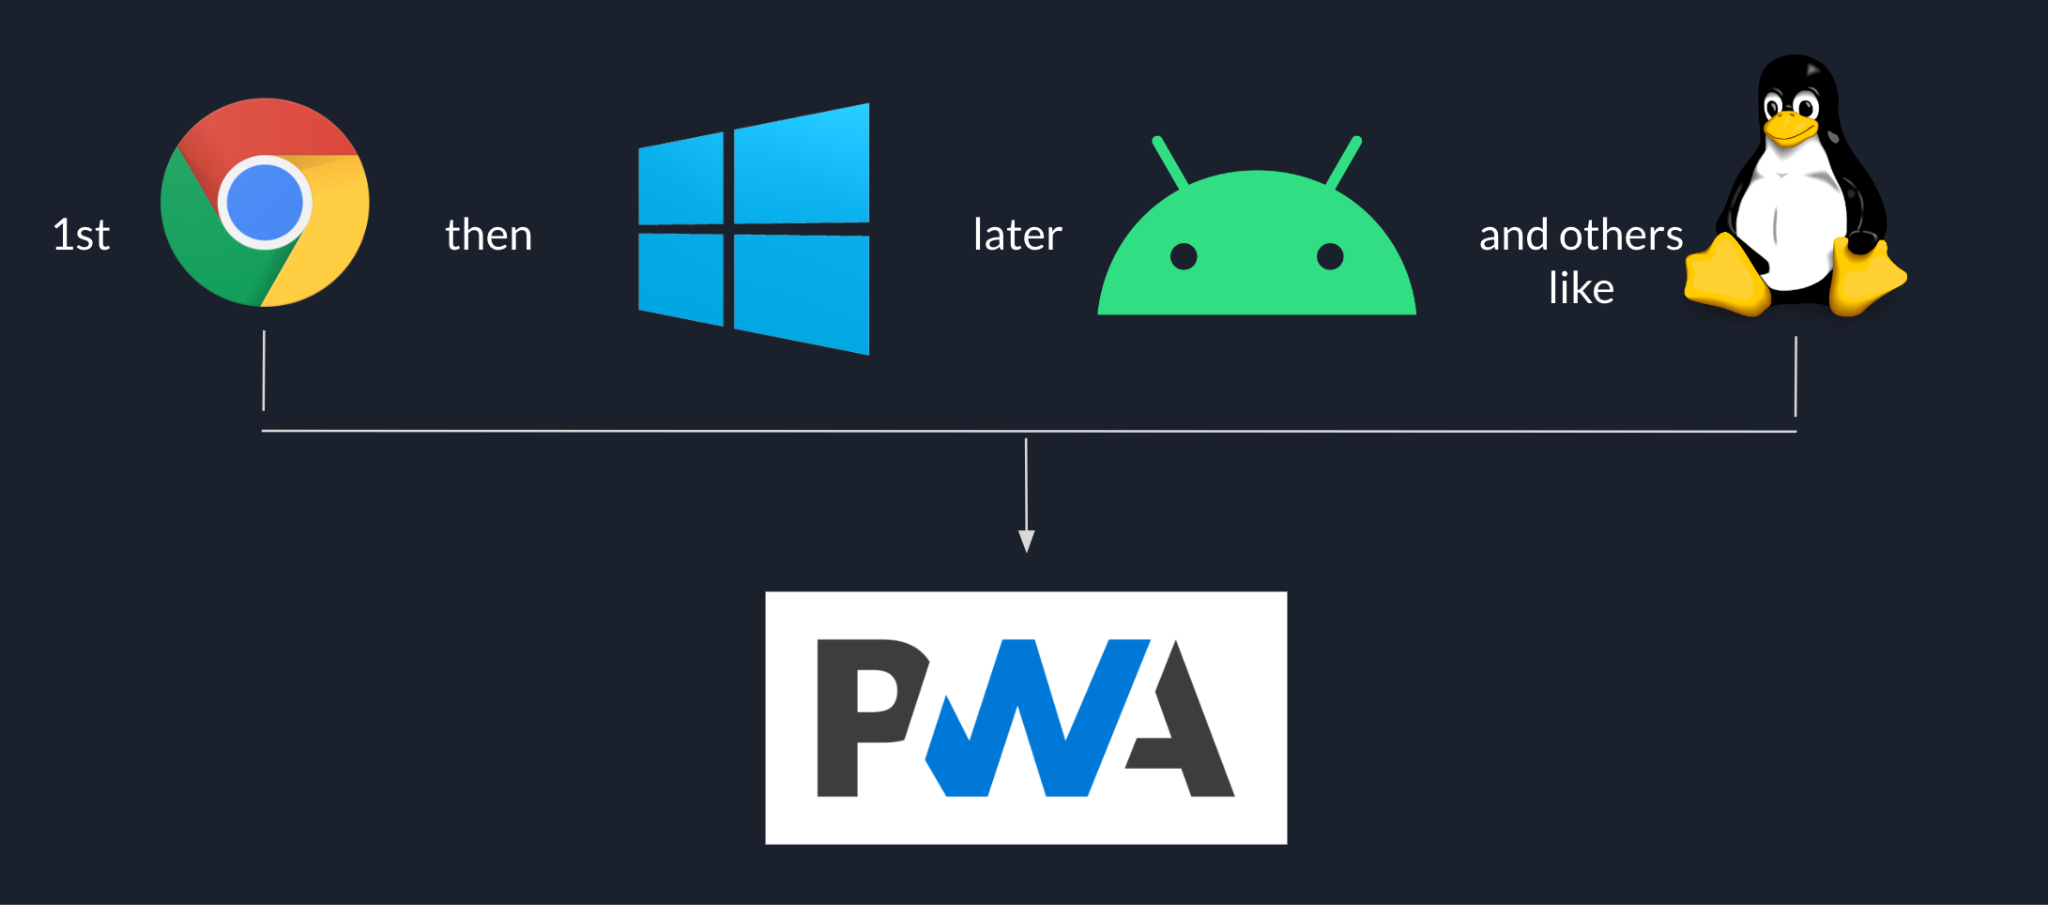 ลำดับการเปิดตัวของ Goodnote จะขึ้นต้นด้วย Chrome ตามด้วย Windows ตามด้วย Android และแพลตฟอร์มอื่นๆ เช่น Linux ในตอนท้าย ทั้งหมดจะอิงตาม PWA